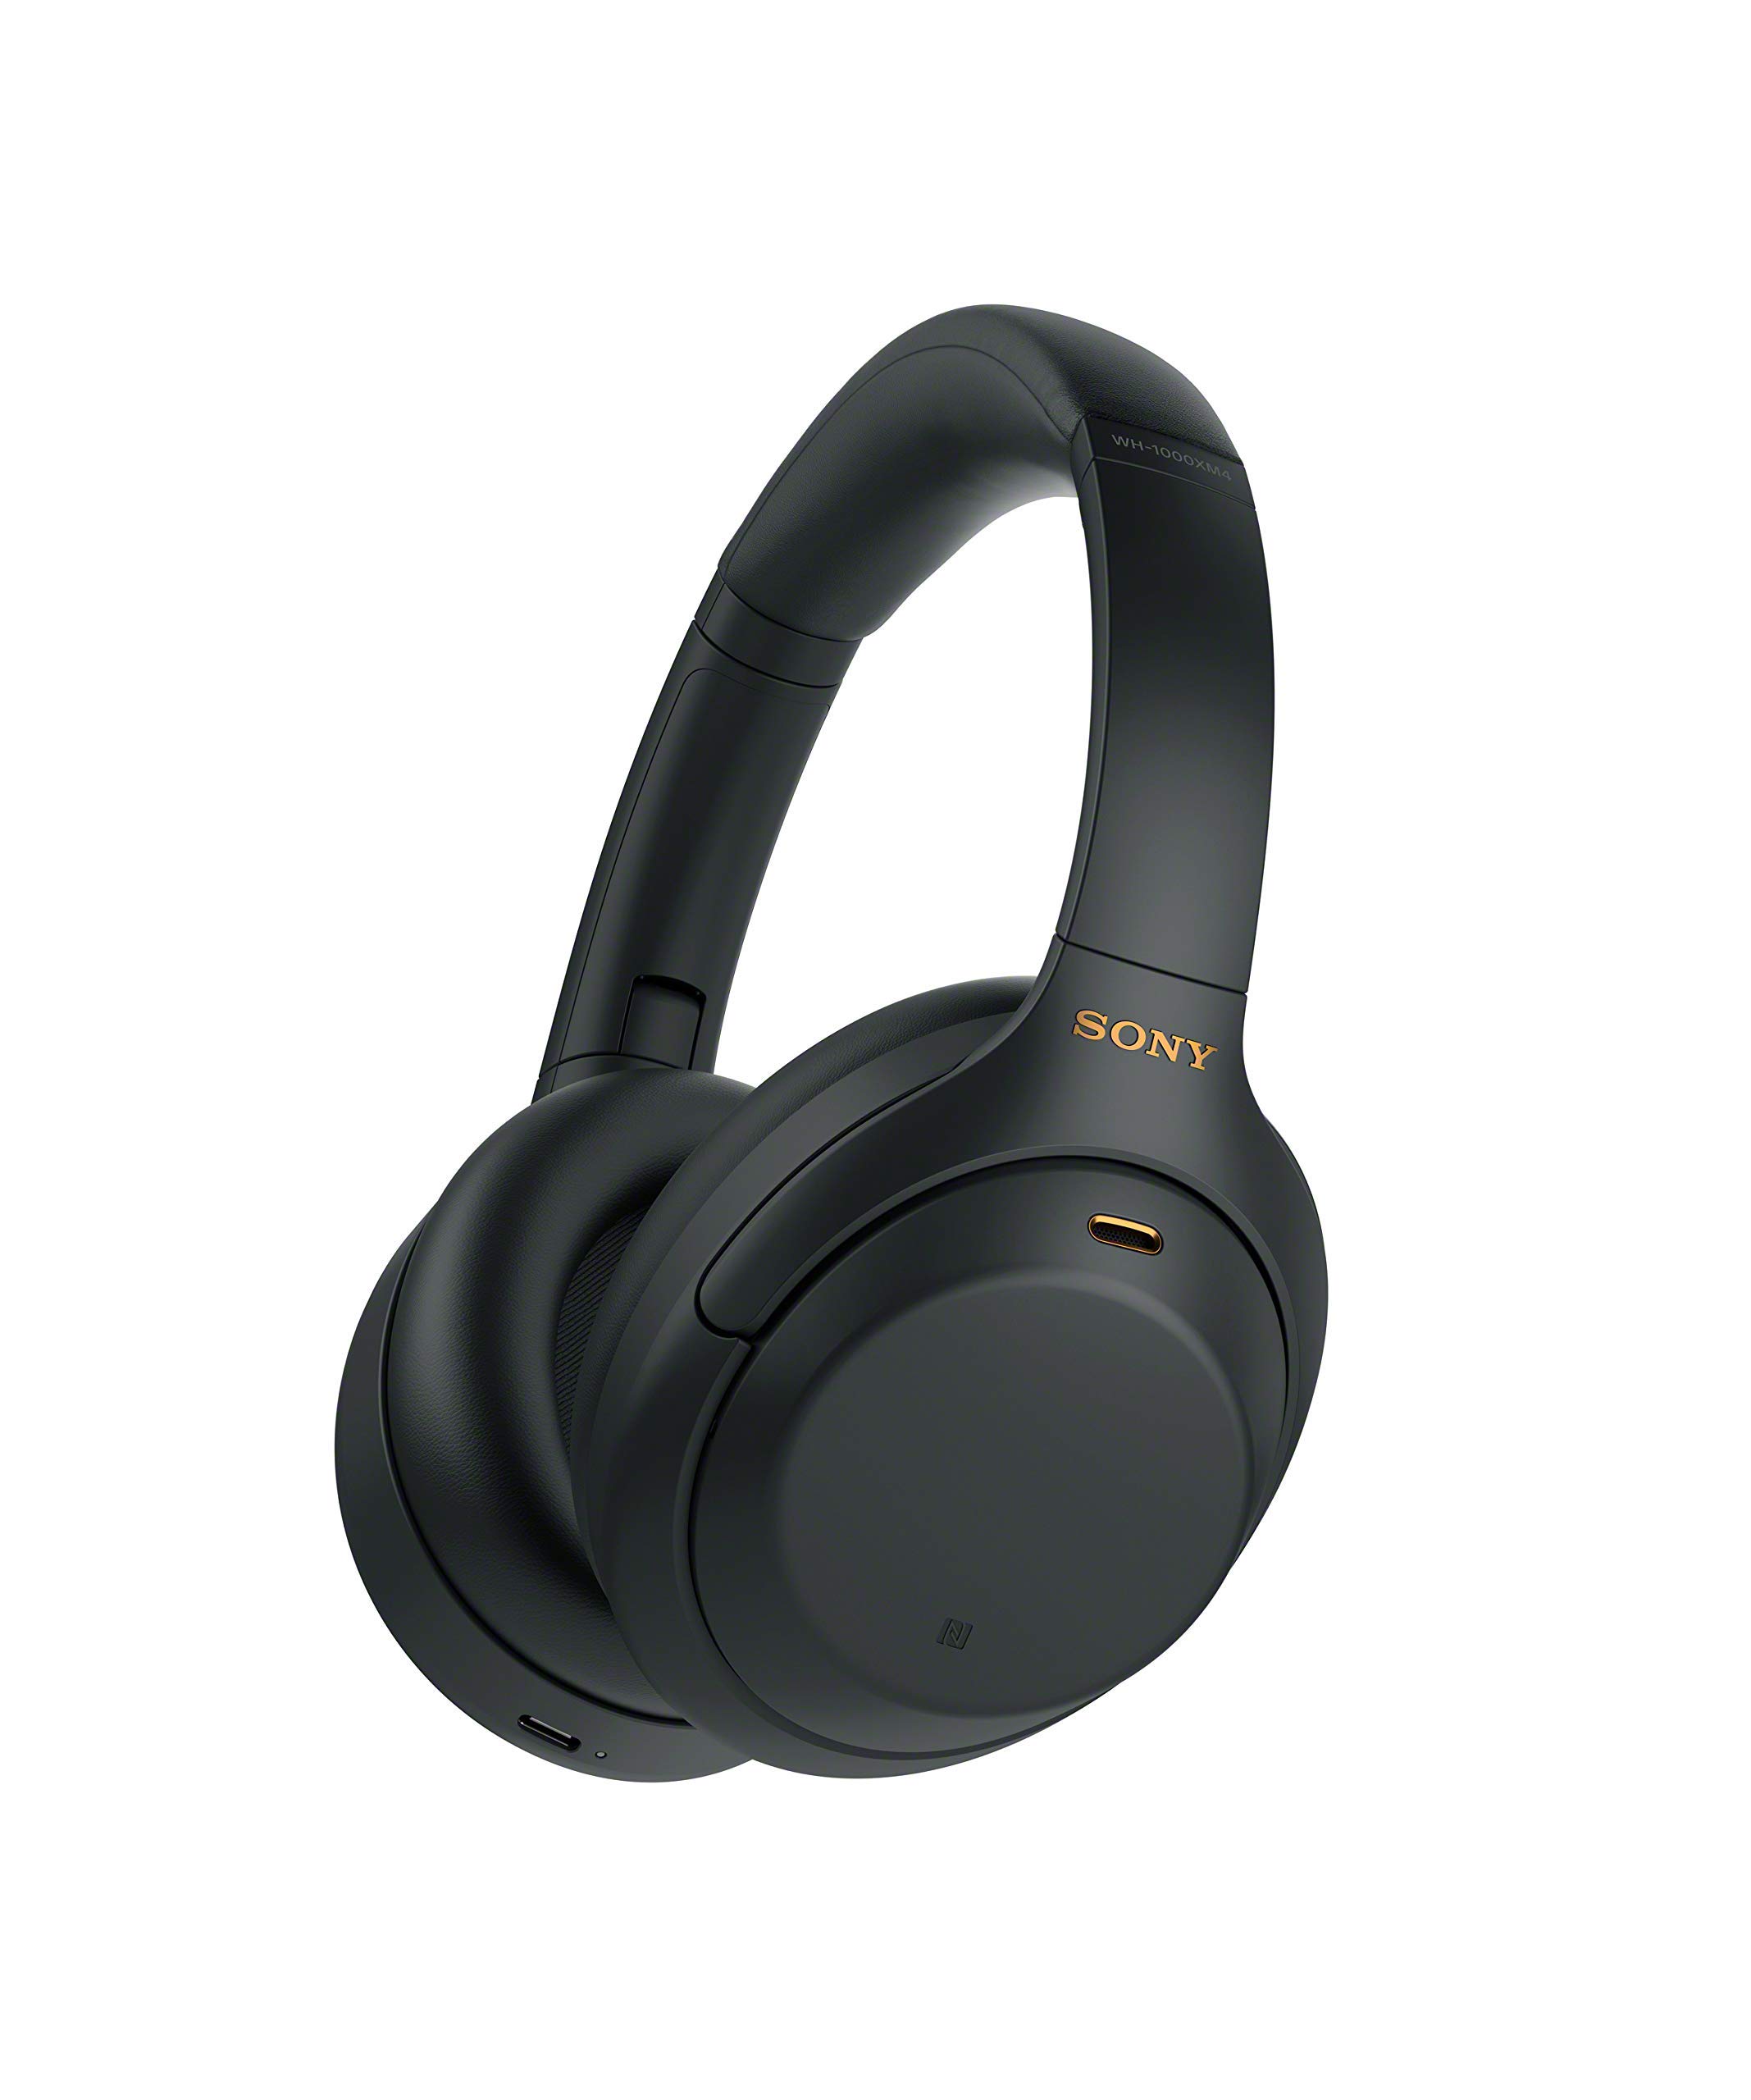 Sony Auriculares inalámbricos con cancelación de ruido WH-1000XM4 - Negro (Renovado)